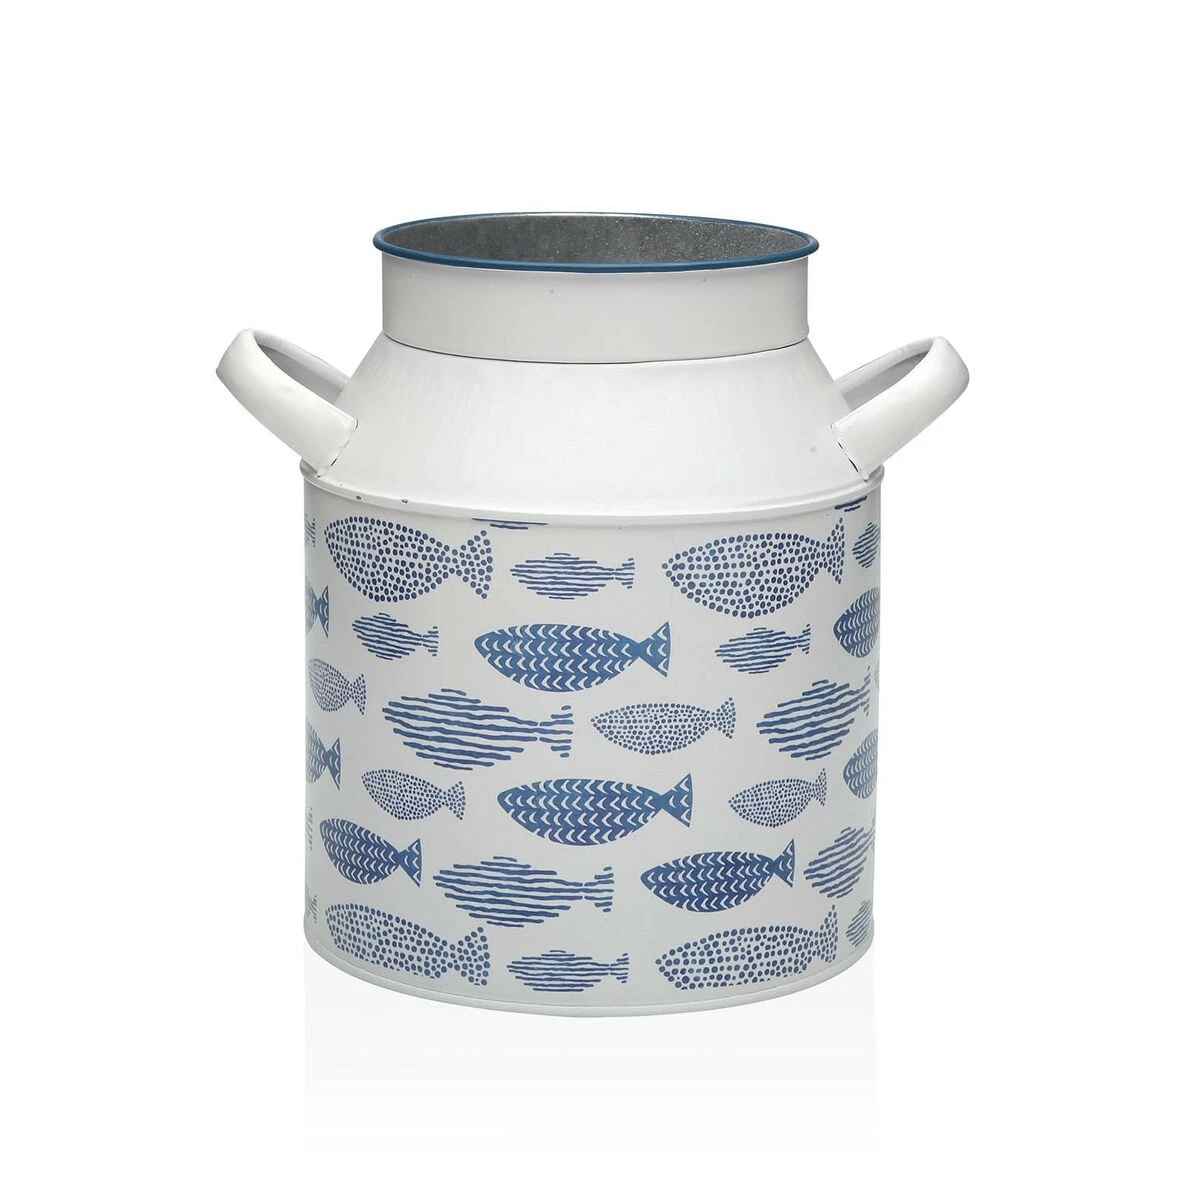 White enamel pot with fish pattern